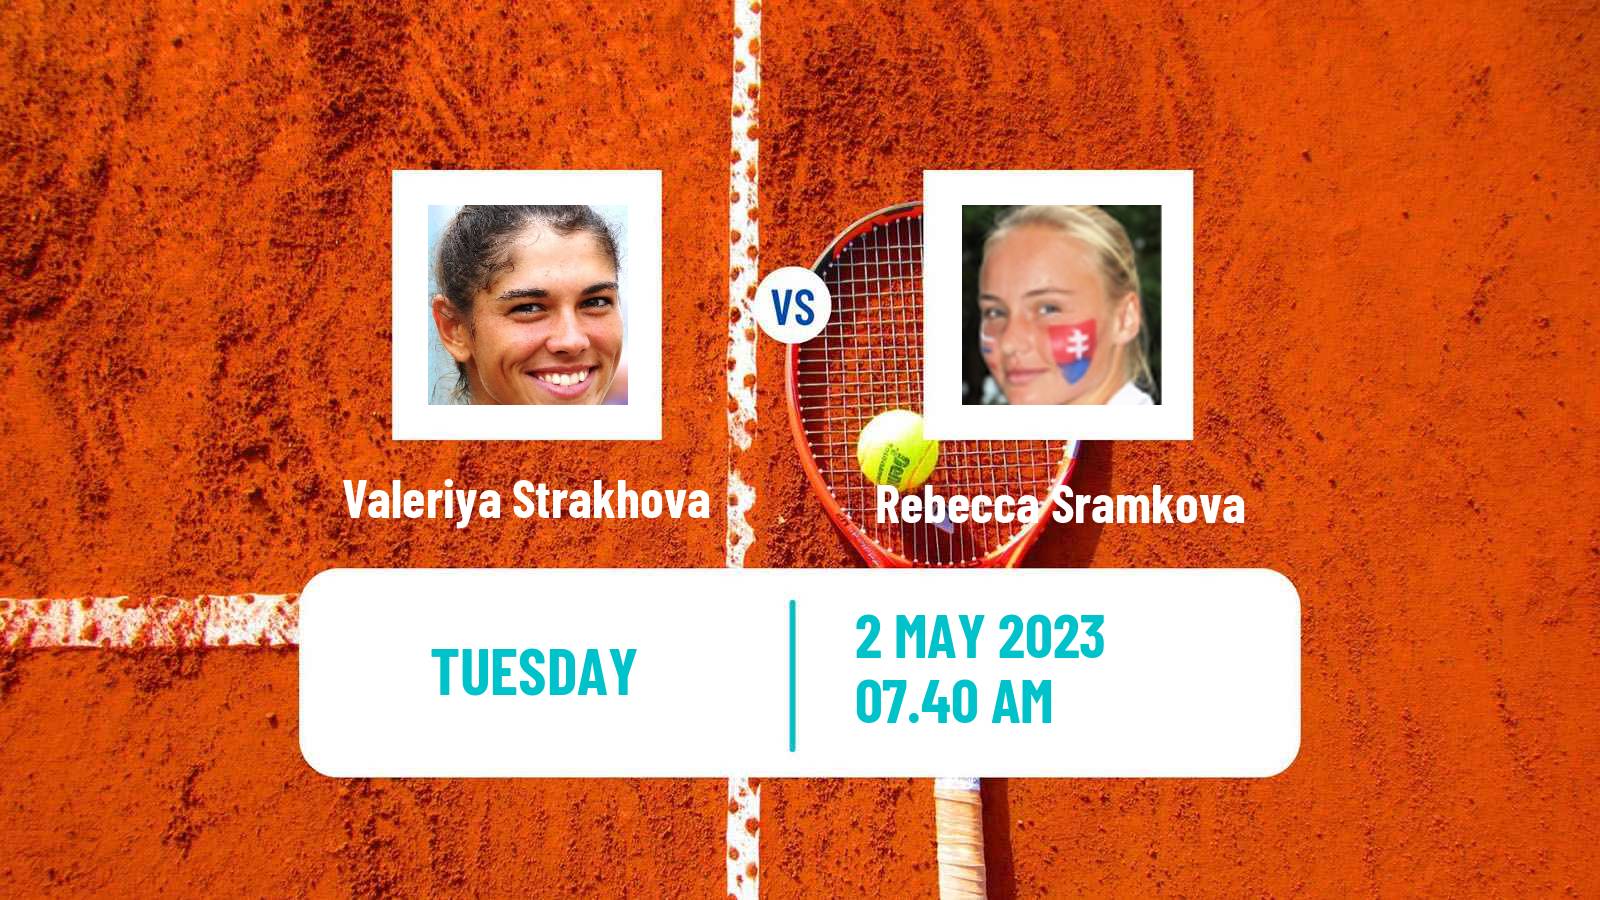 Tennis ITF Tournaments Valeriya Strakhova - Rebecca Sramkova